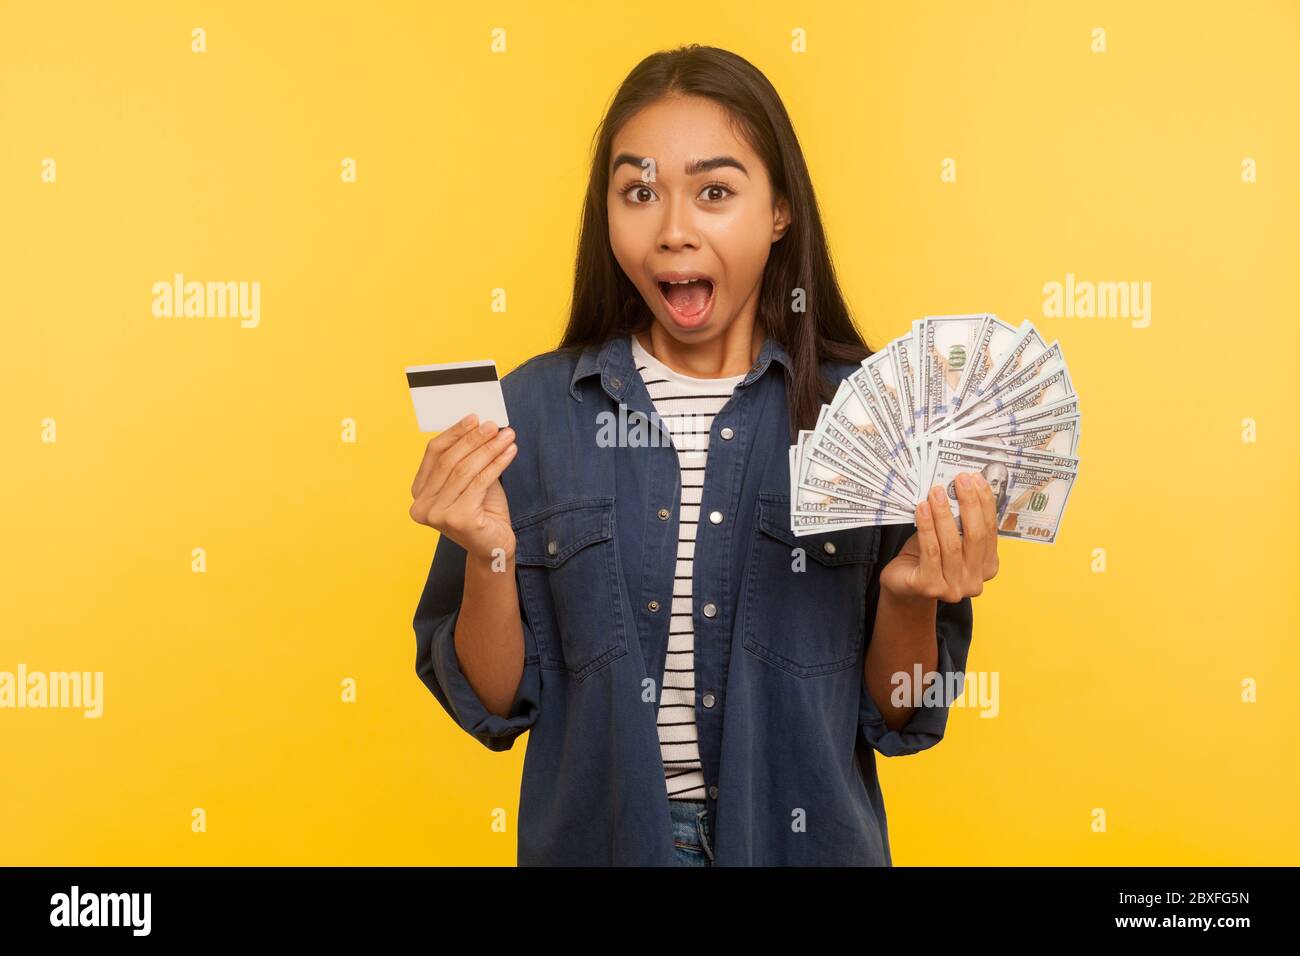 Wow, dépôt bancaire incroyable! Portrait d'une fille surprise en chemise denim tenant une carte de crédit et des billets de banque, criant dans l'étonnement, exp choqué Banque D'Images